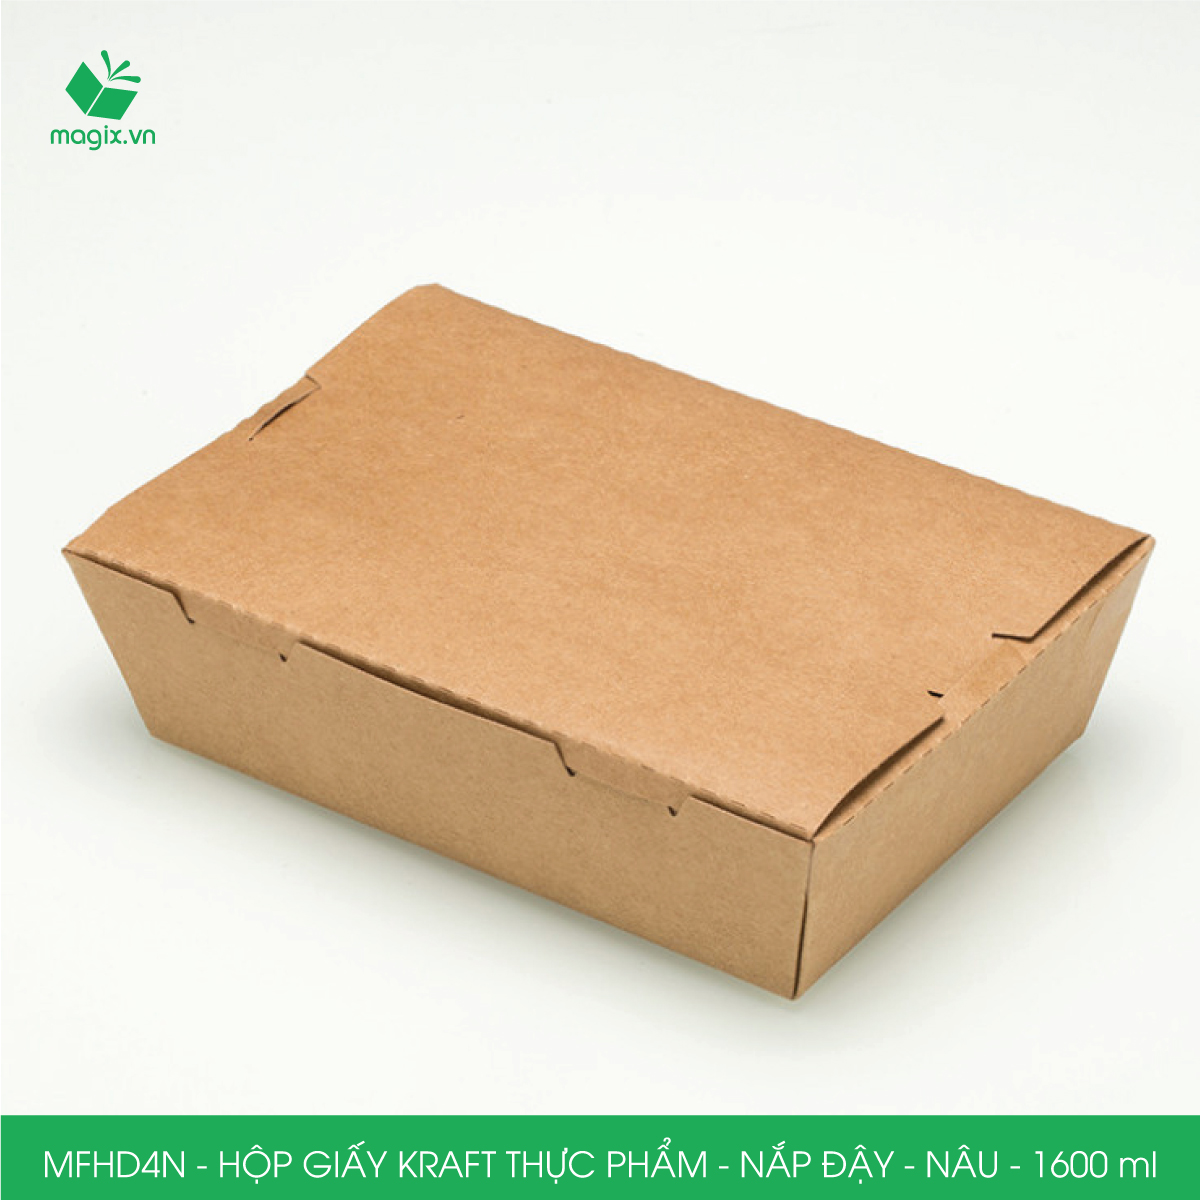 MFHD4N - Combo 50 hộp giấy kraft thực phẩm 1600ml, hộp đựng thức ăn nắp đậy màu nâu, hộp gói đồ ăn mang đi